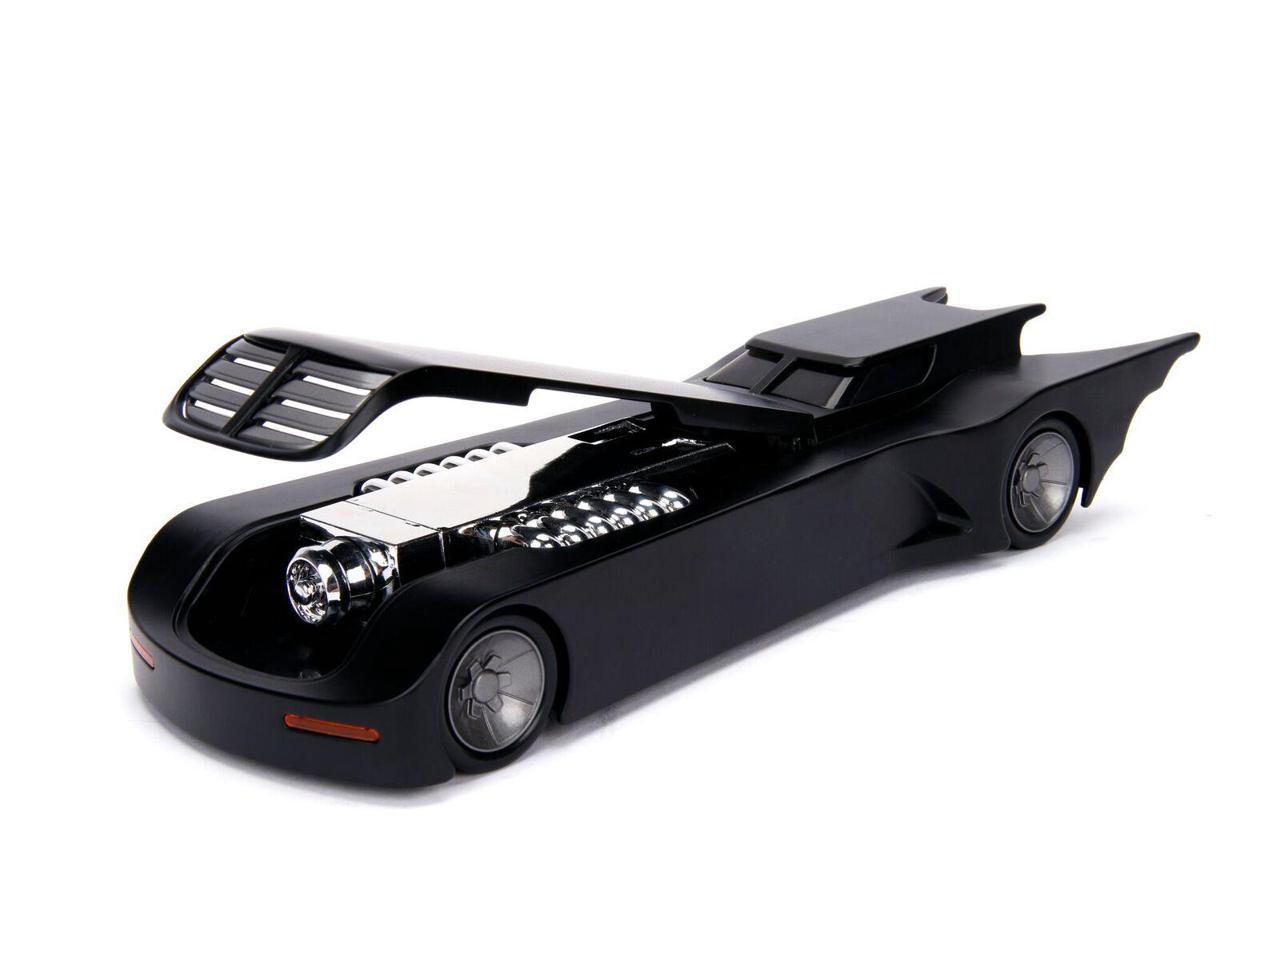 BATMAN BATMOBILE W/ FIGURE 1:24 KIT diecast model die cast toy car miniature 